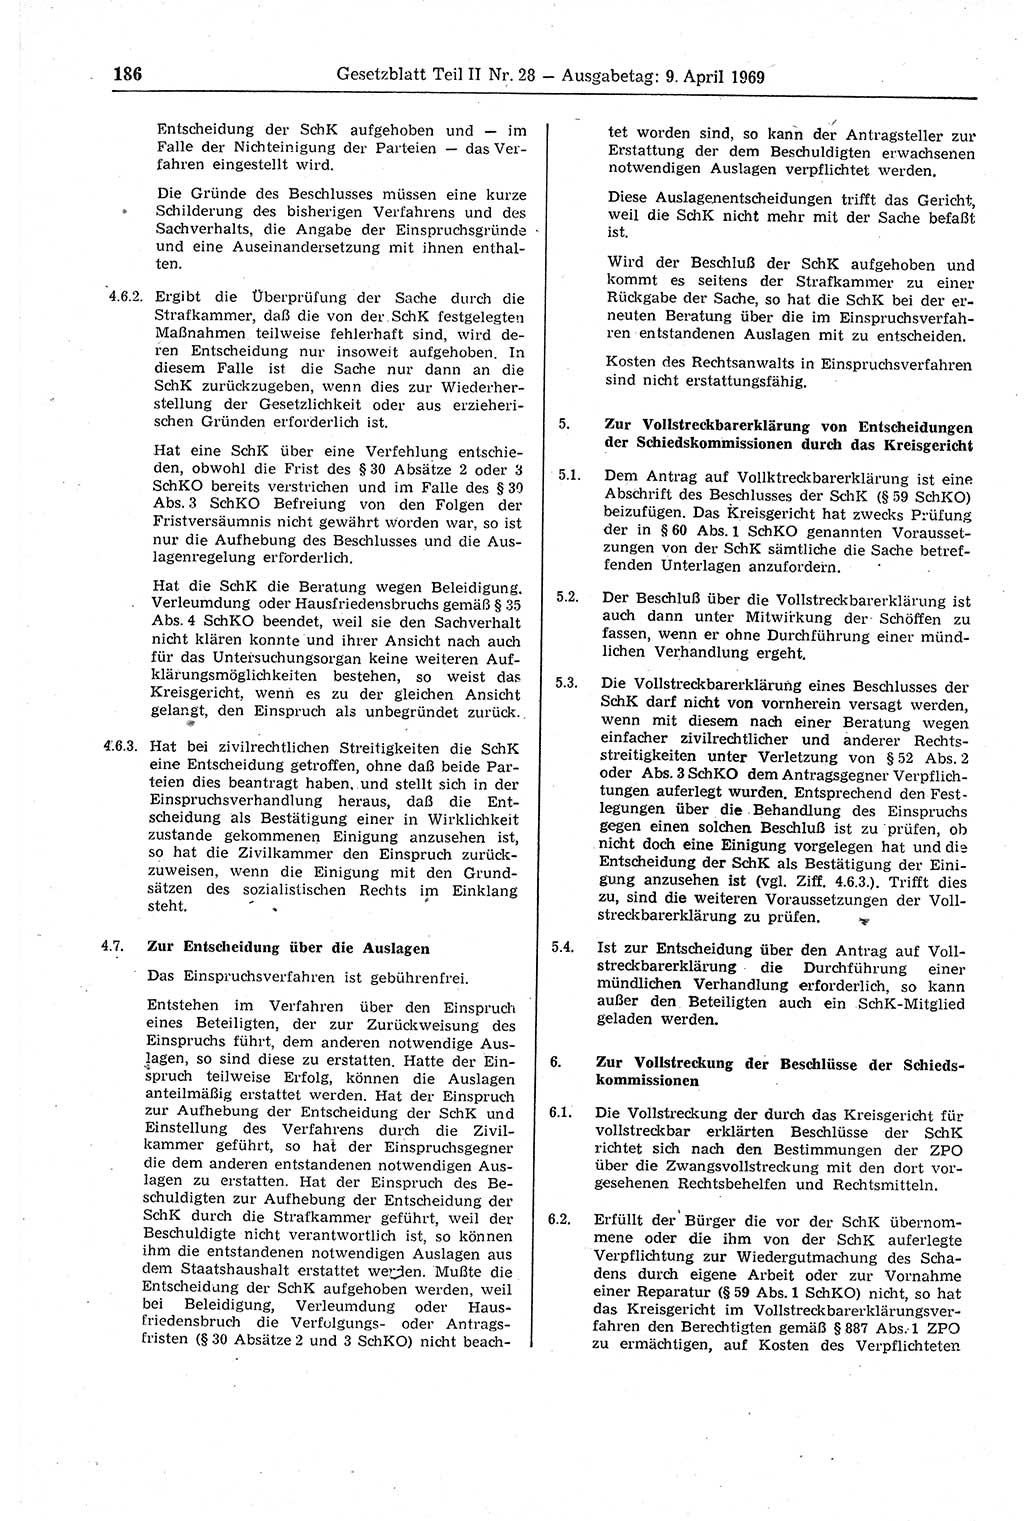 Gesetzblatt (GBl.) der Deutschen Demokratischen Republik (DDR) Teil ⅠⅠ 1969, Seite 186 (GBl. DDR ⅠⅠ 1969, S. 186)